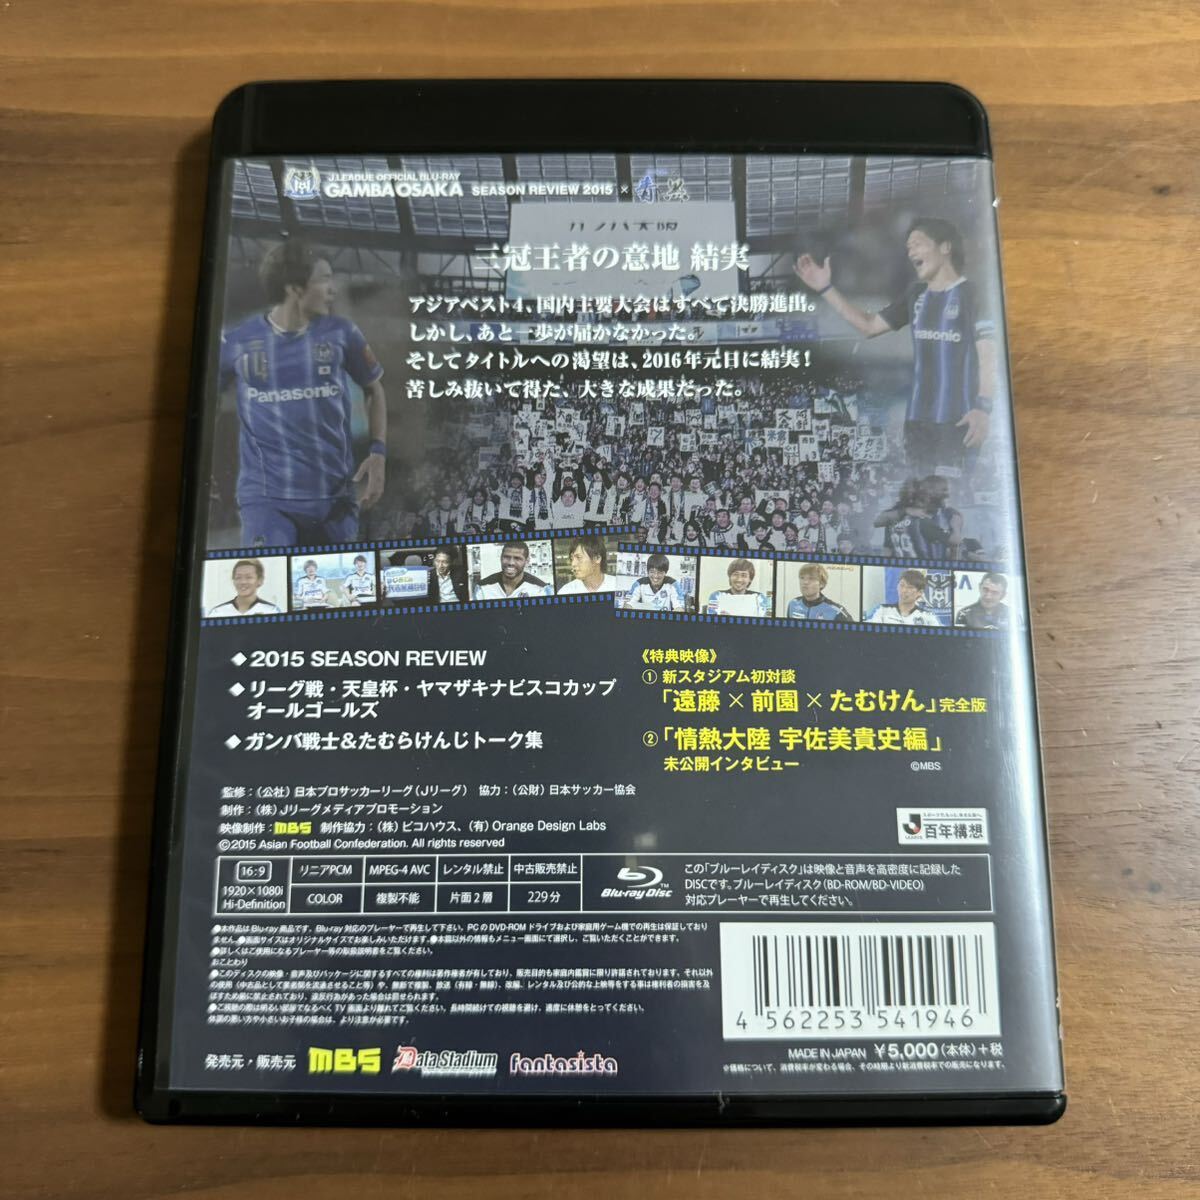 2015 ガンバ大阪 Blu-ray ブルーレイ シーズンレビュー ユニフォーム 遠藤保仁 宇佐美貴史の画像2